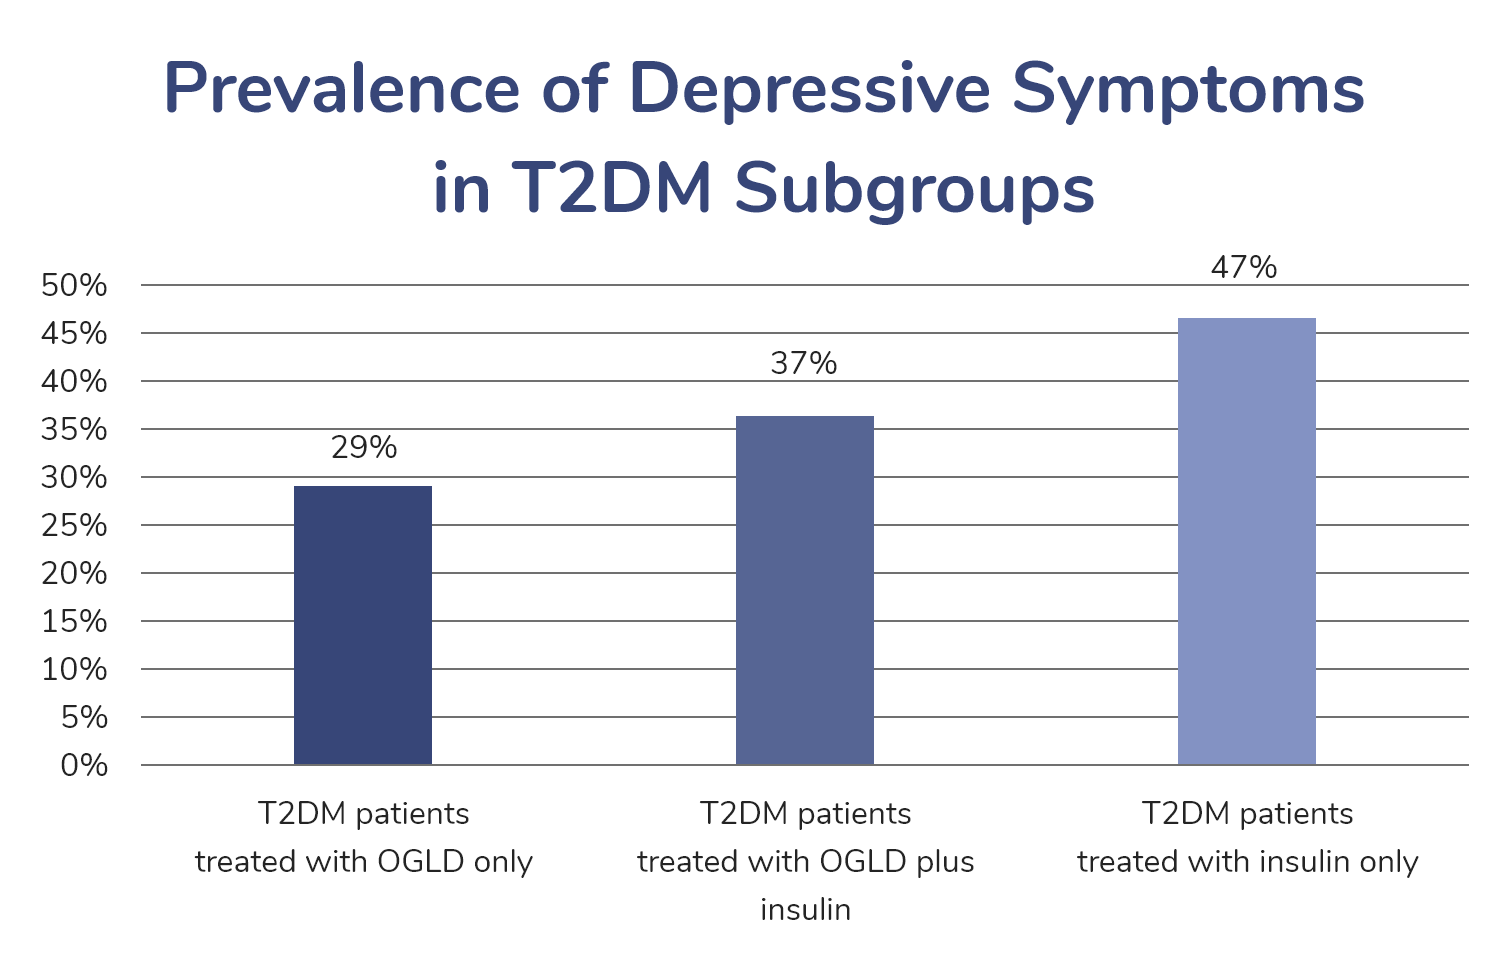 Prevalence of Depressive Symptoms in T2DM Subgroups